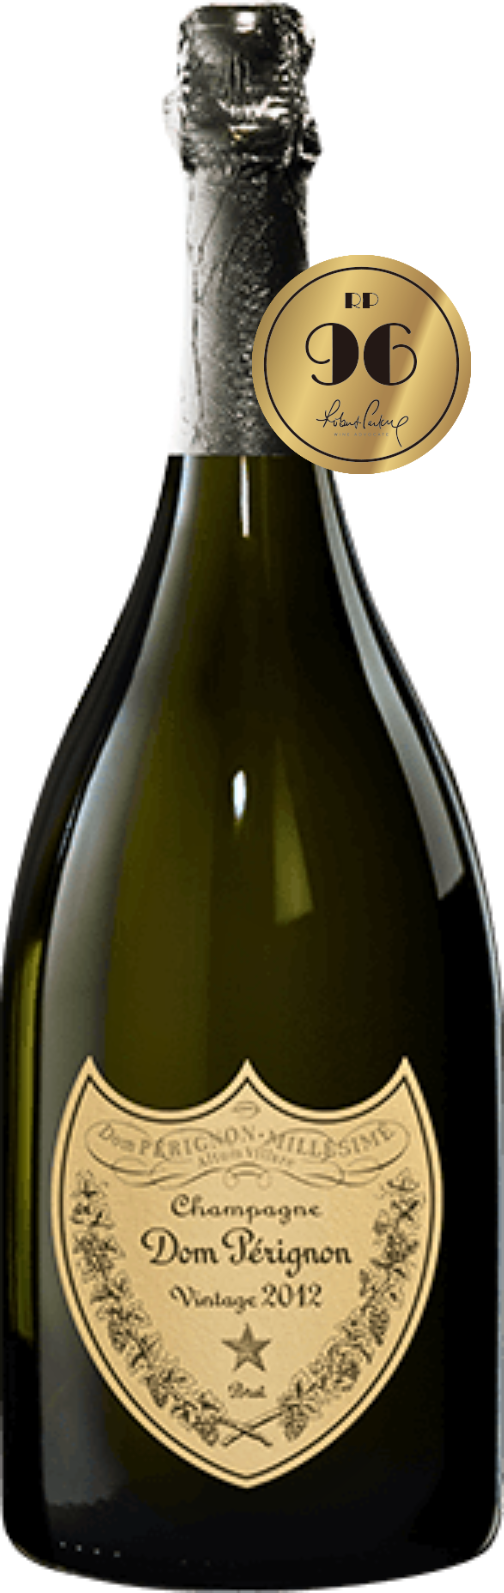 Dom Pérignon 2012 MAGNUM 1.5L (RP:96)